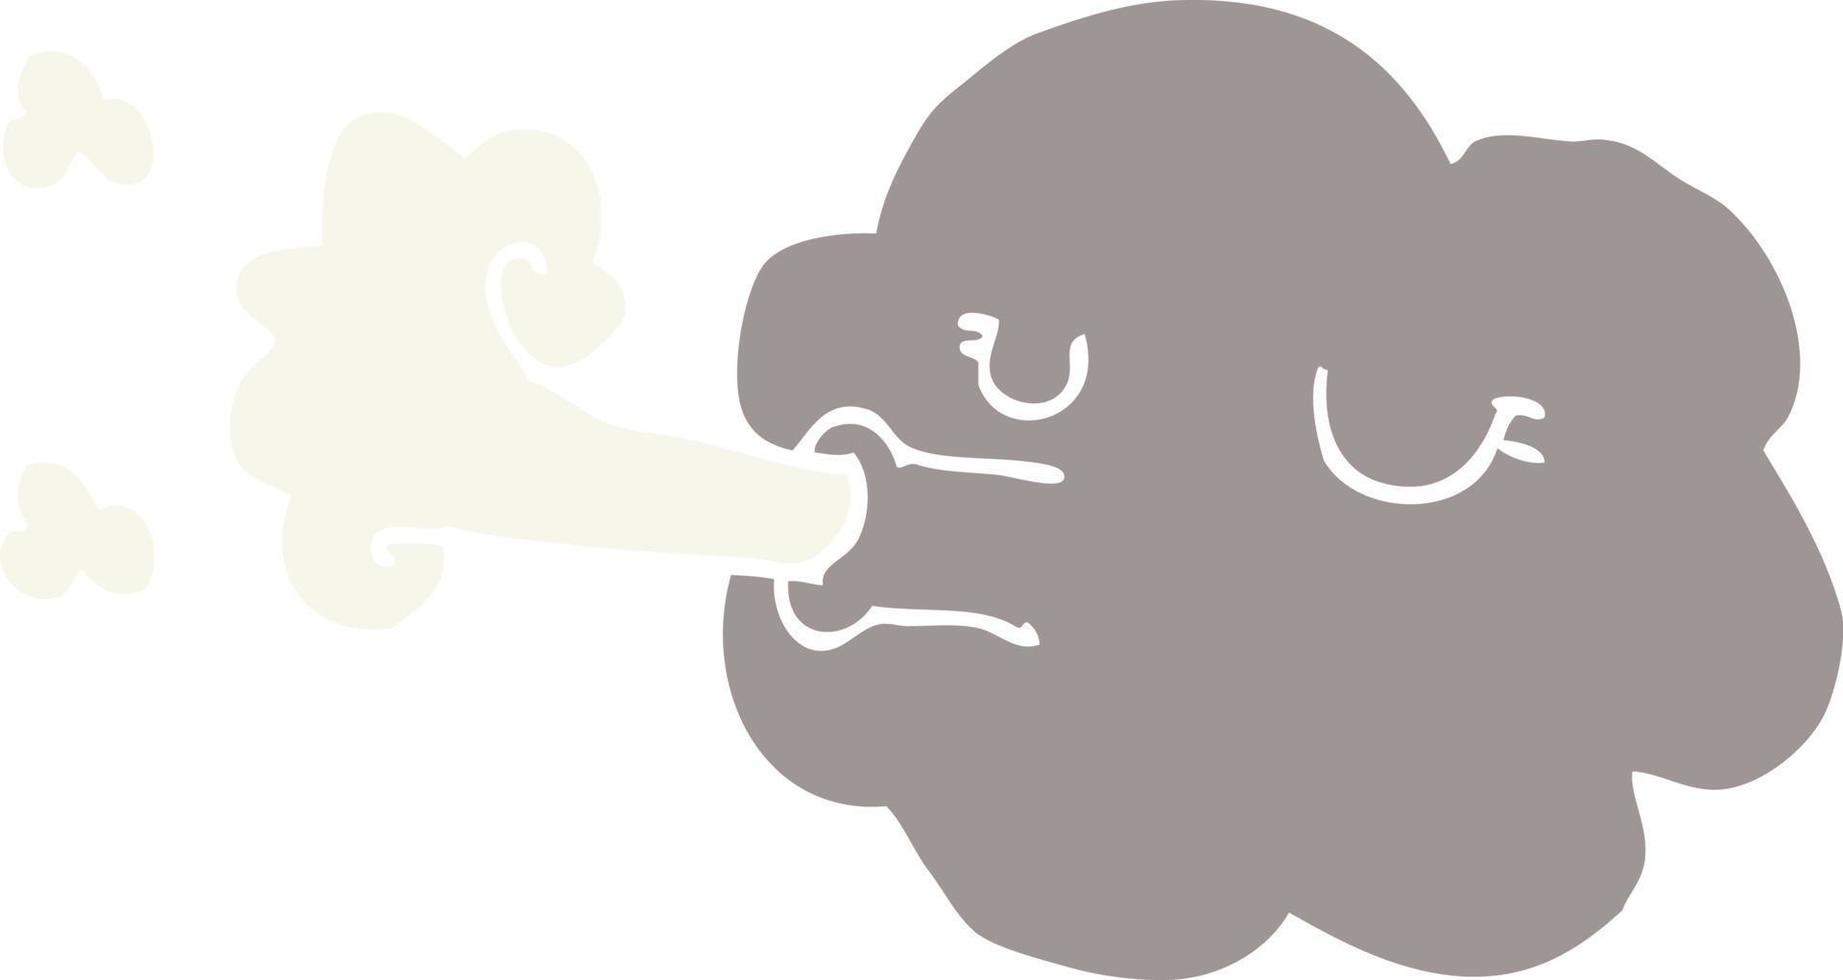 nuvola di doodle del fumetto che soffia una burrasca vettore